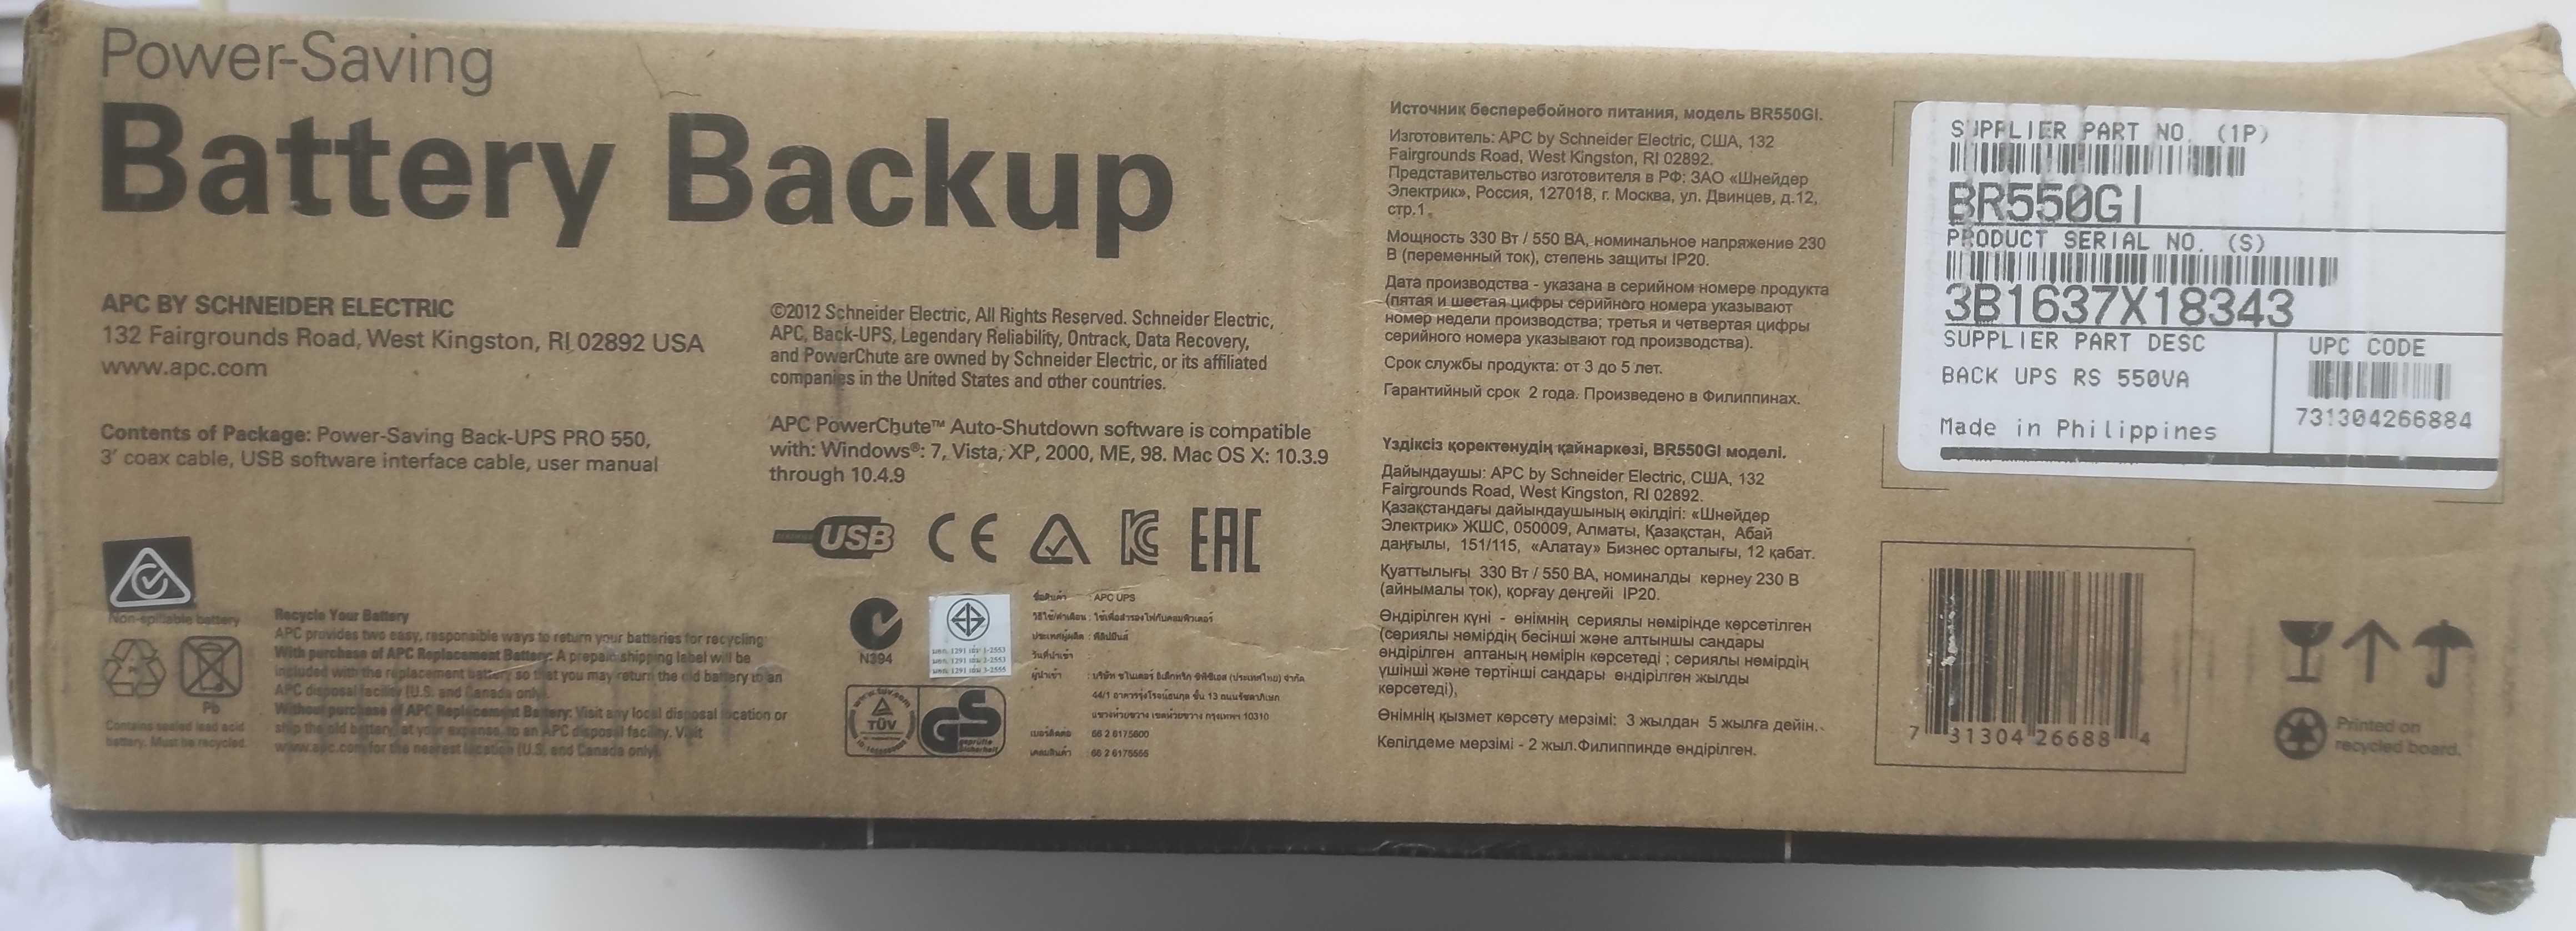 ИБП APC Back-UPS Pro 550 BR550GI